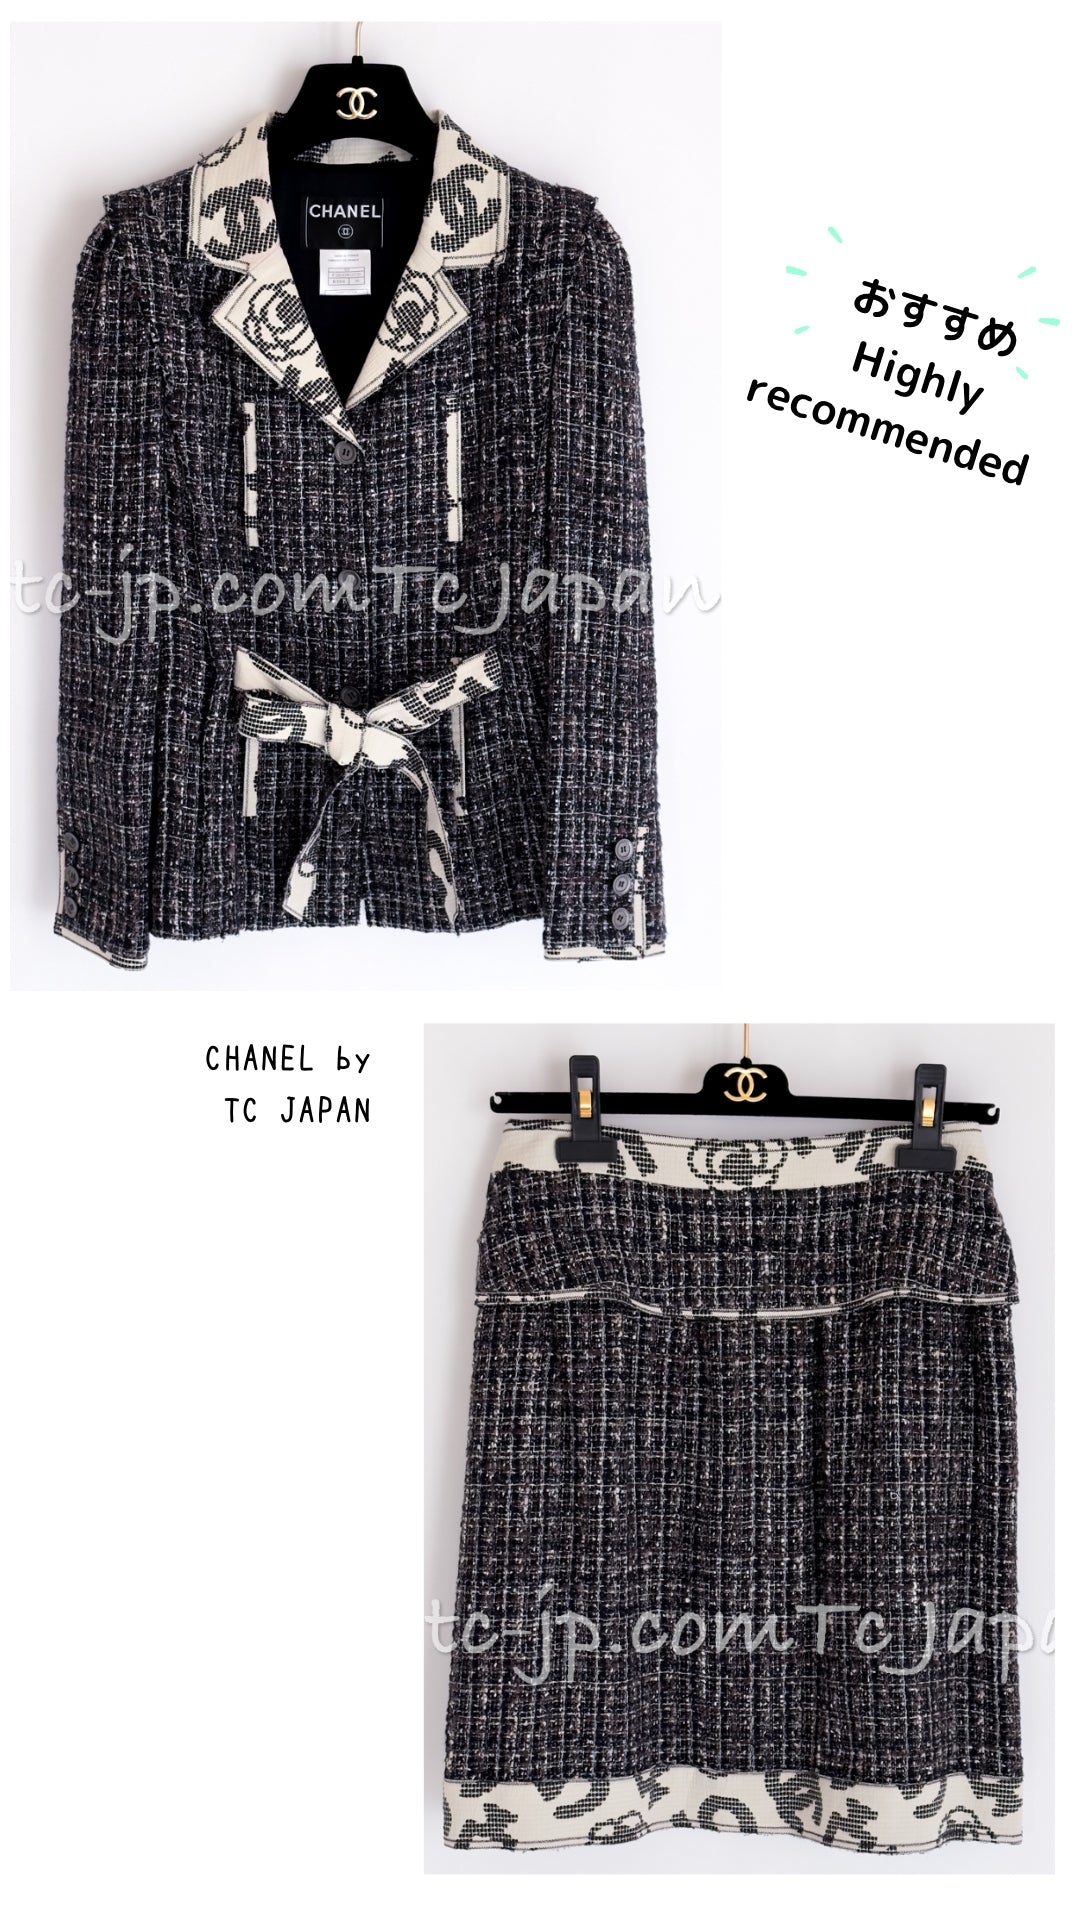 シャネル スーツ CHANEL Suit【正規品・専門店】シャネル 洋服の専門店 